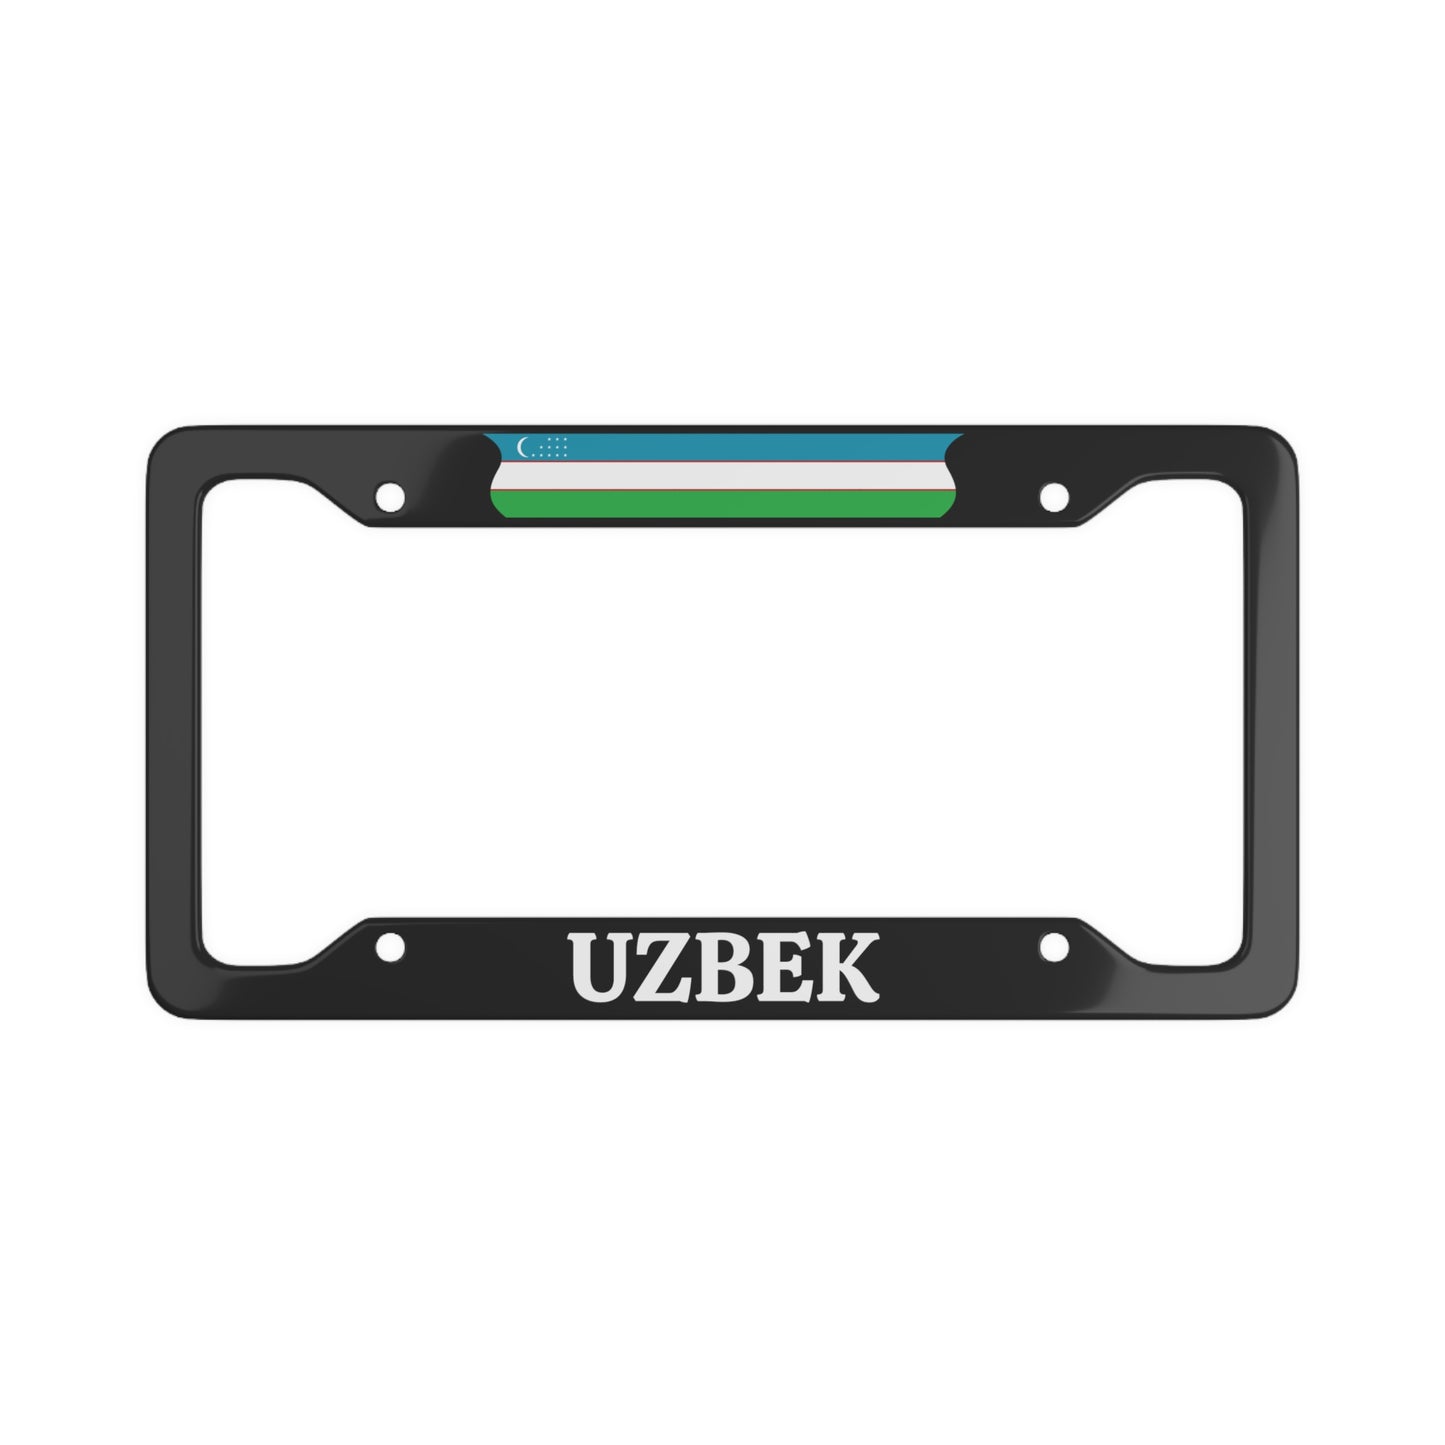 UZBEK with flag License Plate Frame